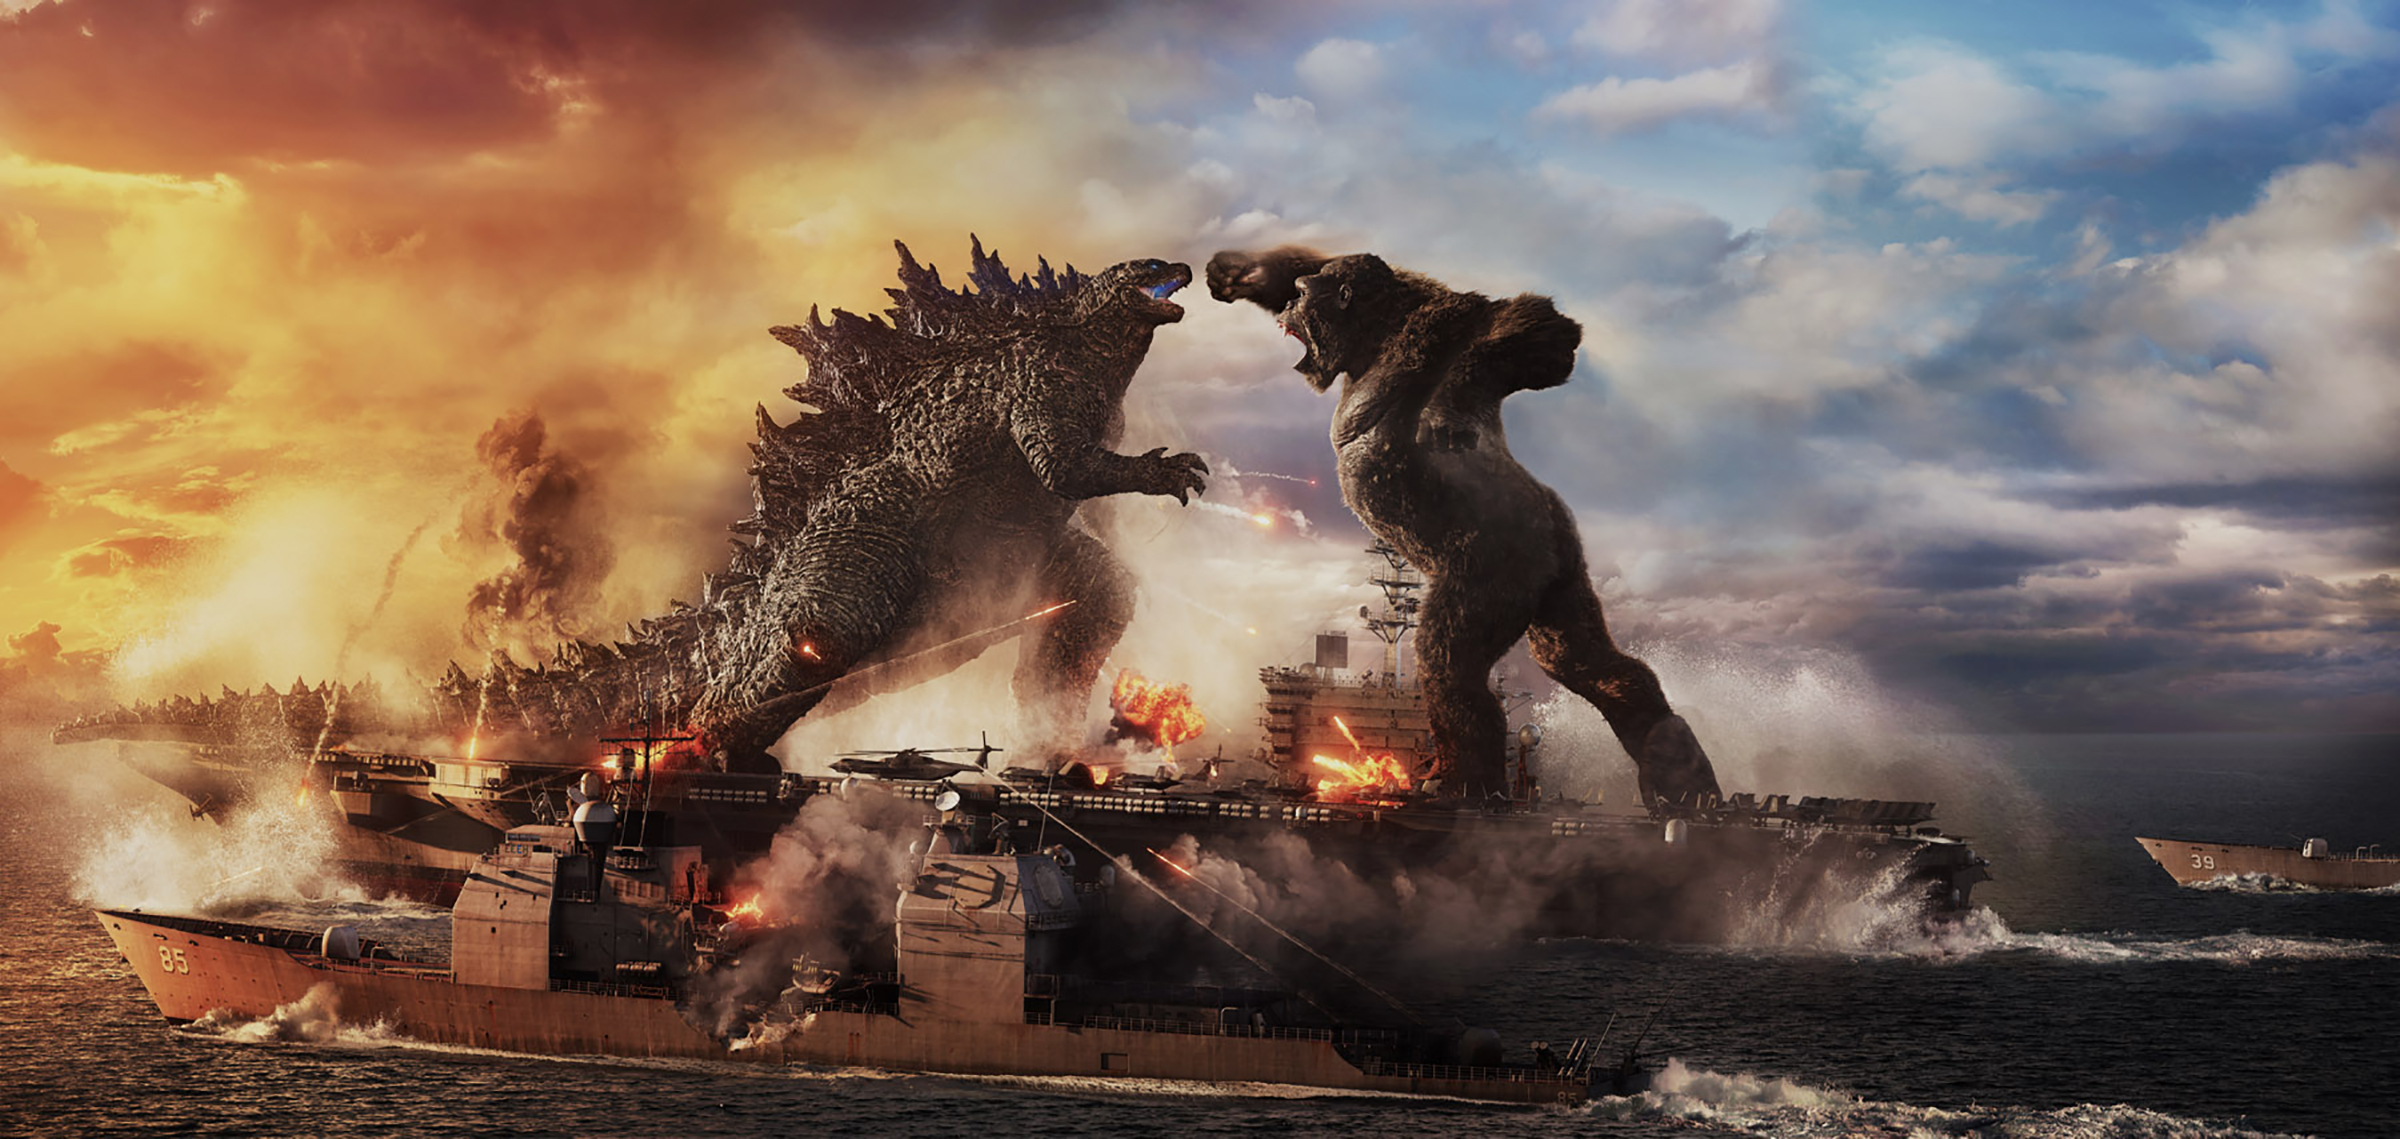 Review: Godzilla vs. Kong (2021)